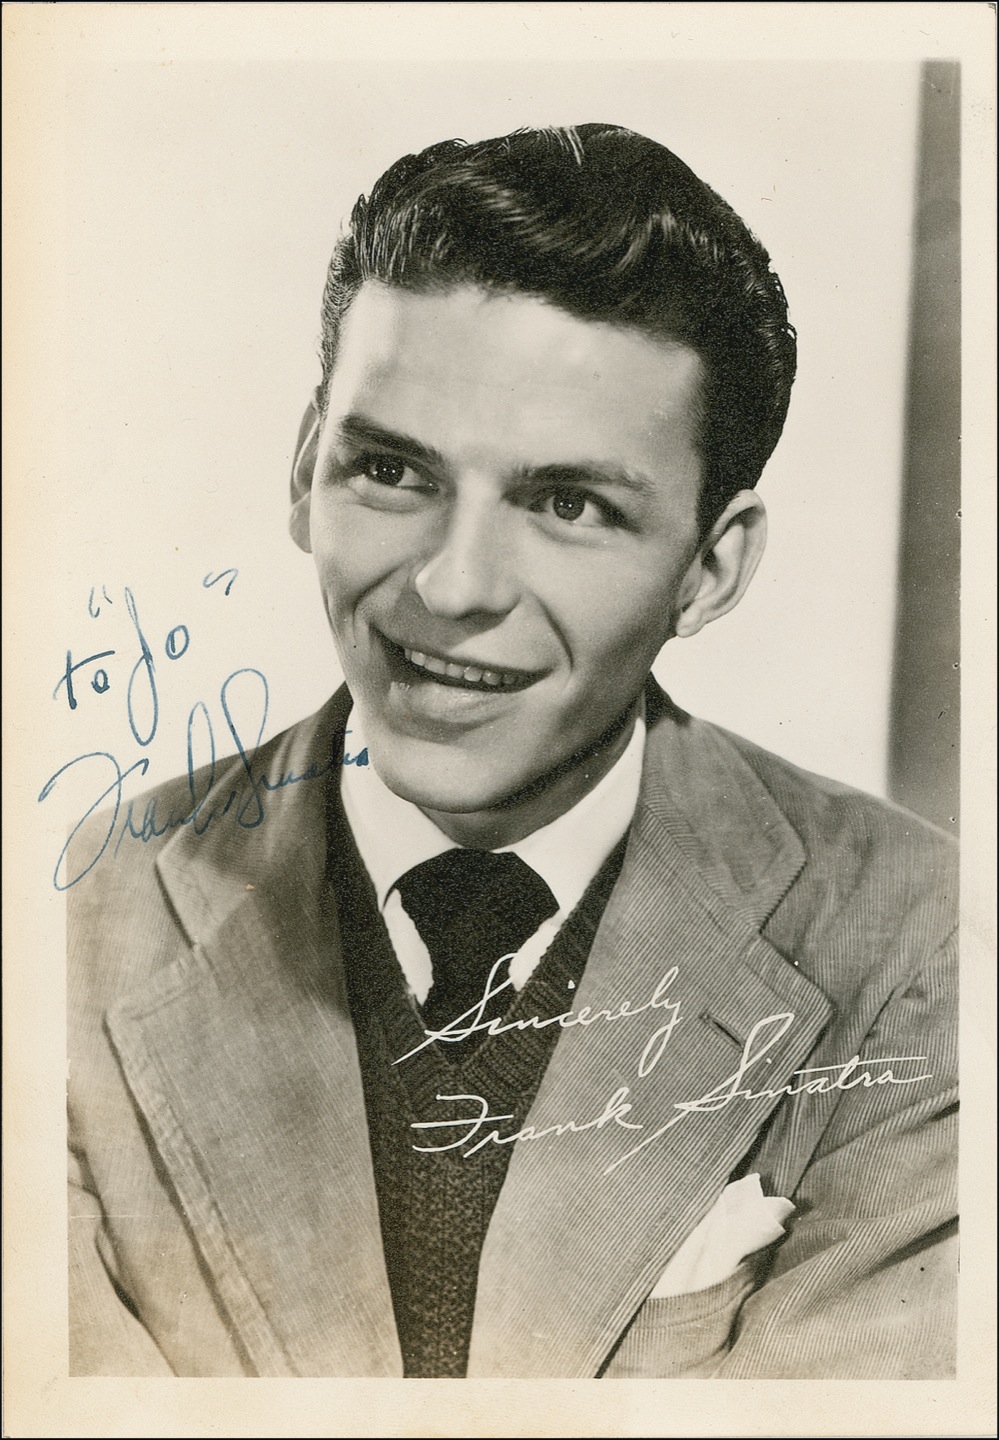 Lot #829 Frank Sinatra